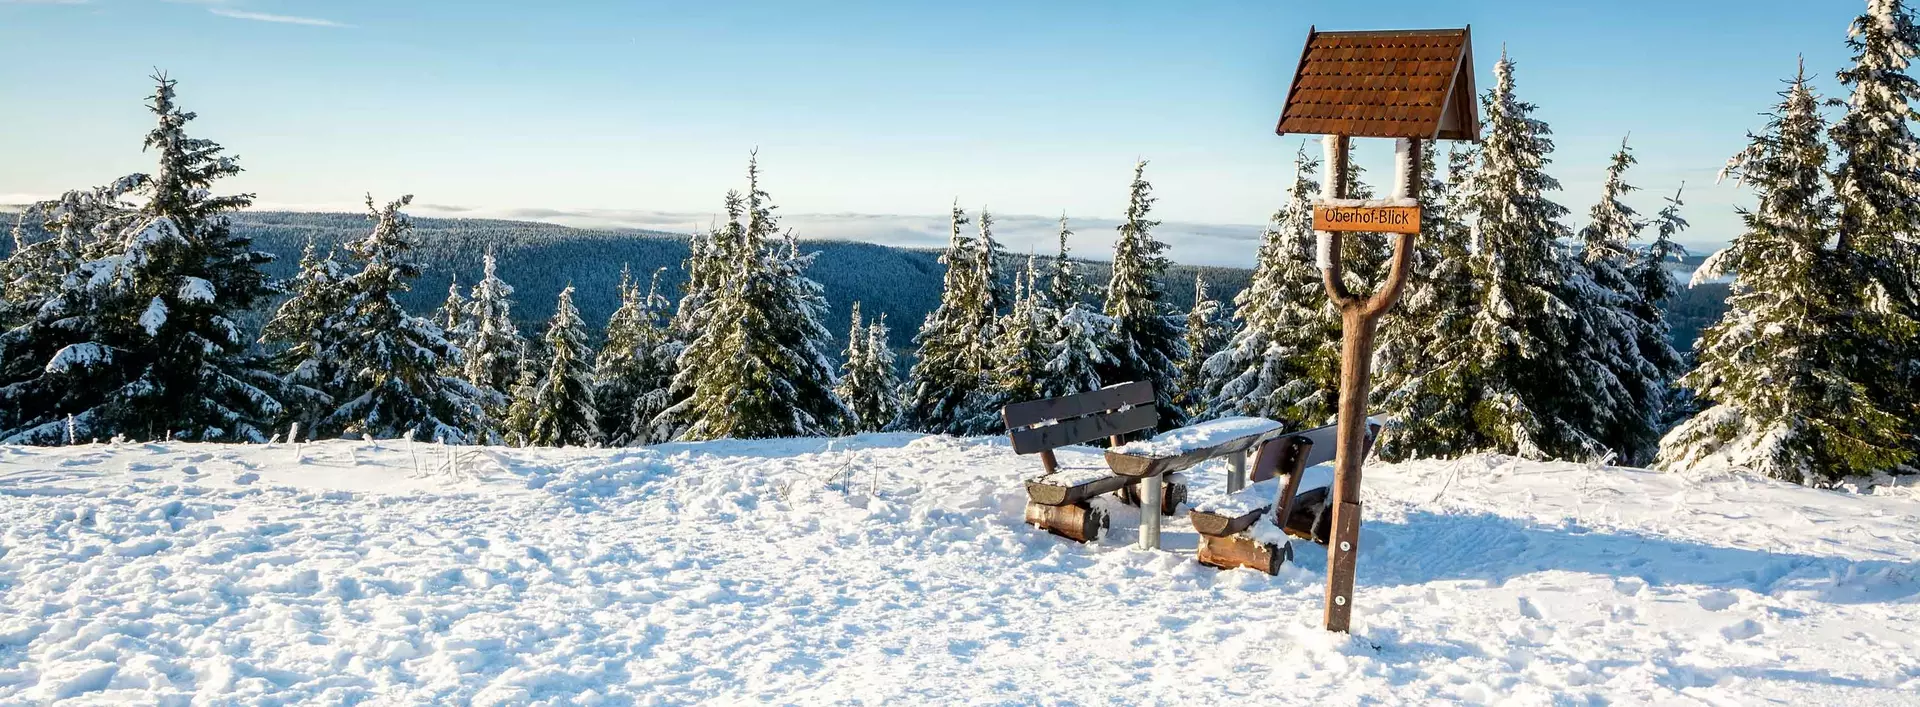 Winterurlaub in Thüringen verbringen und auf dem Schneekopf den Ausblick auf Oberhof genießen